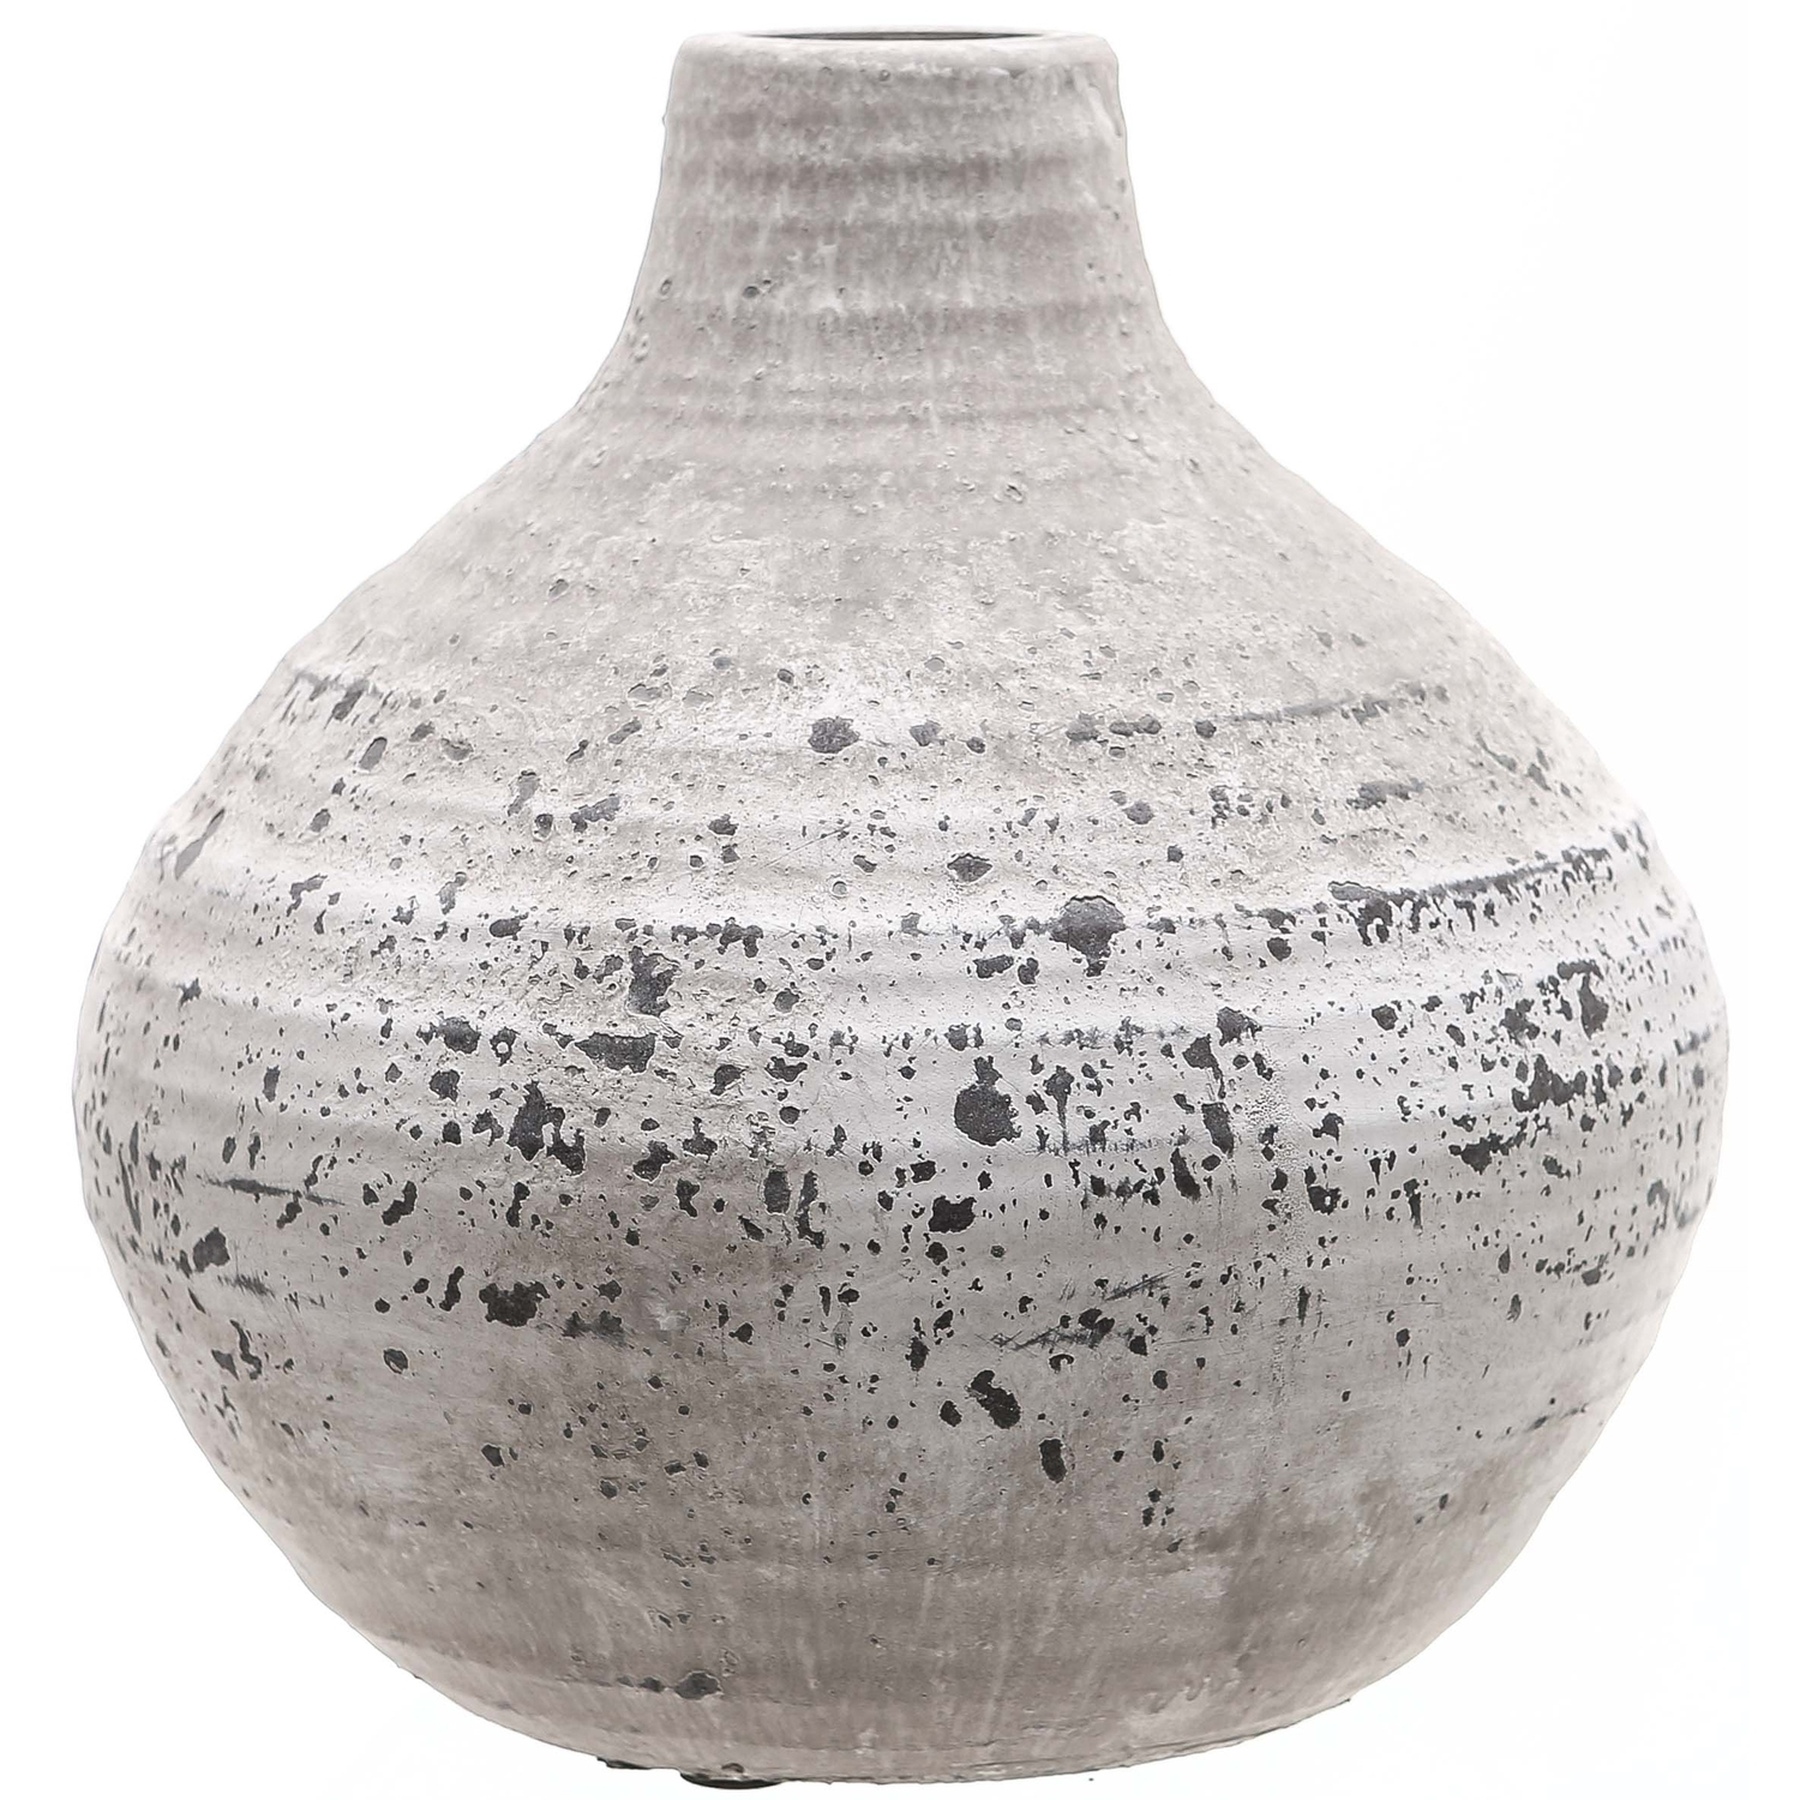 Amphora Stone Ceramic Vase - Image 1